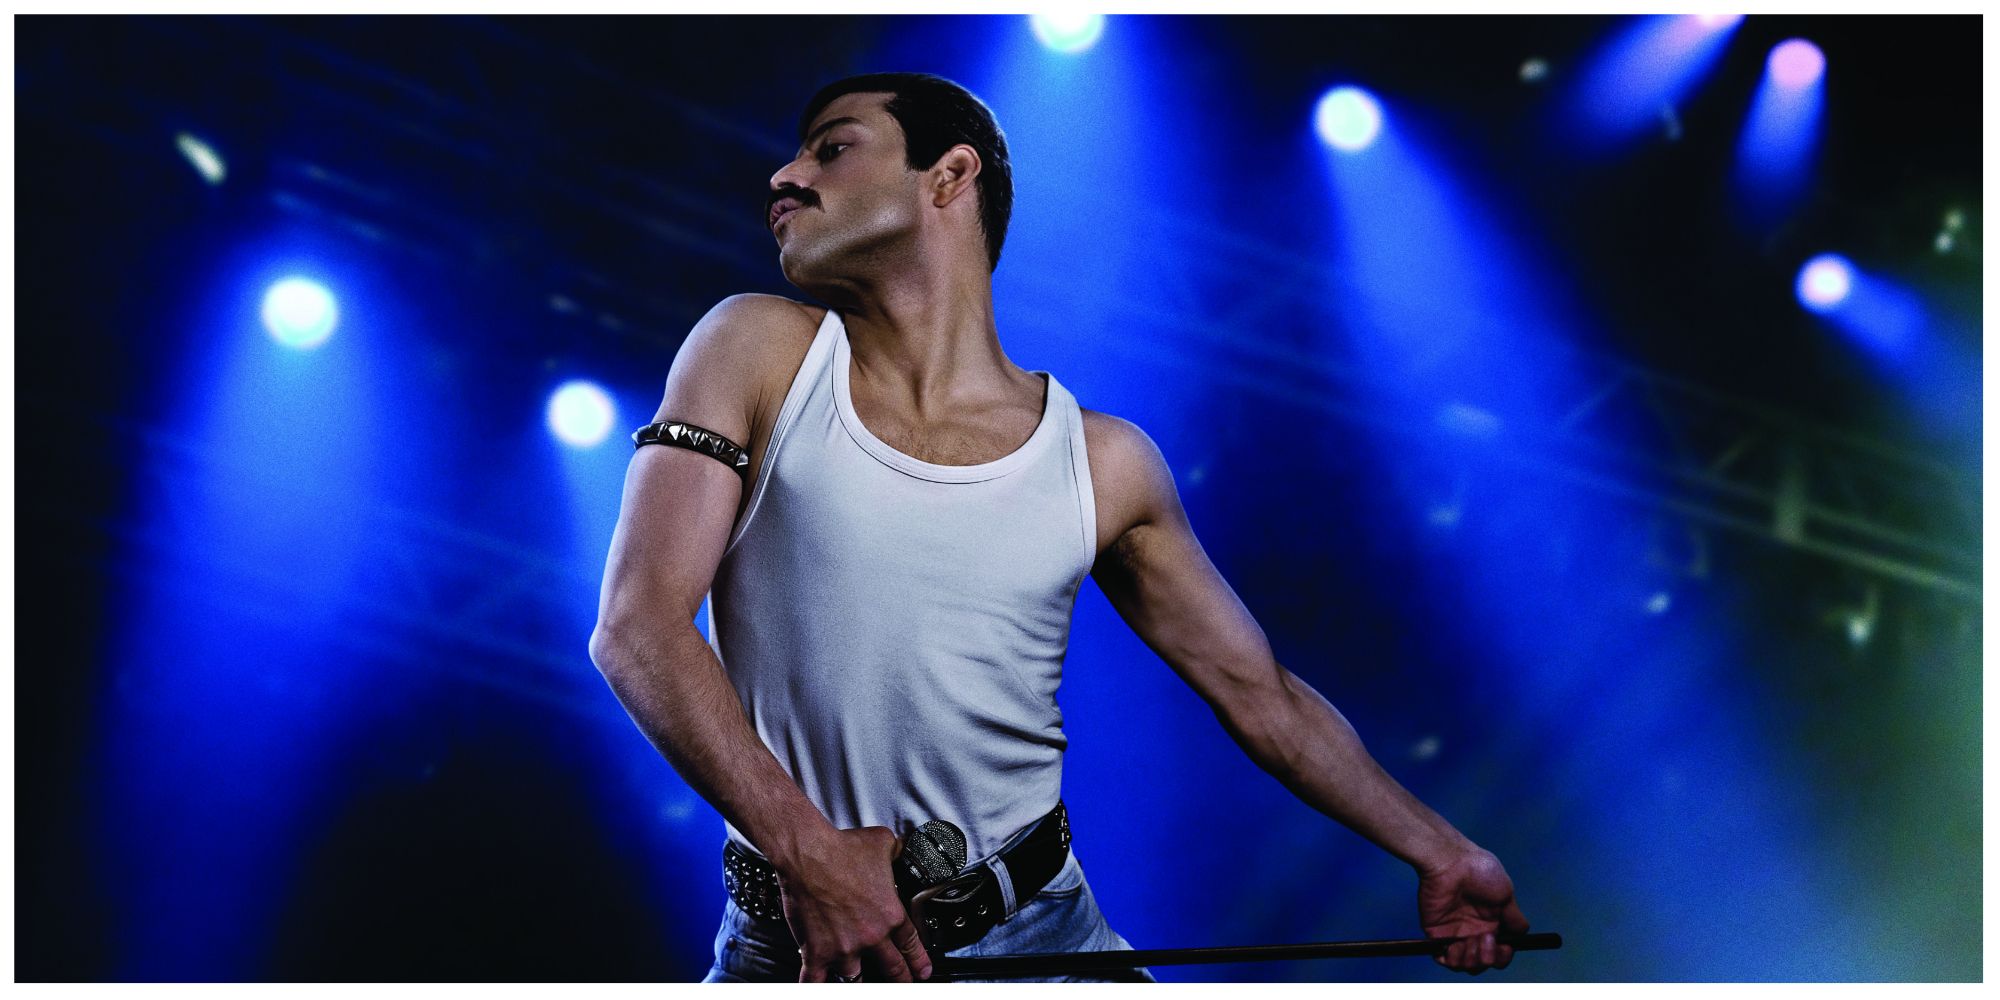 Rami Malek dancing on stage as Freddie Mercury